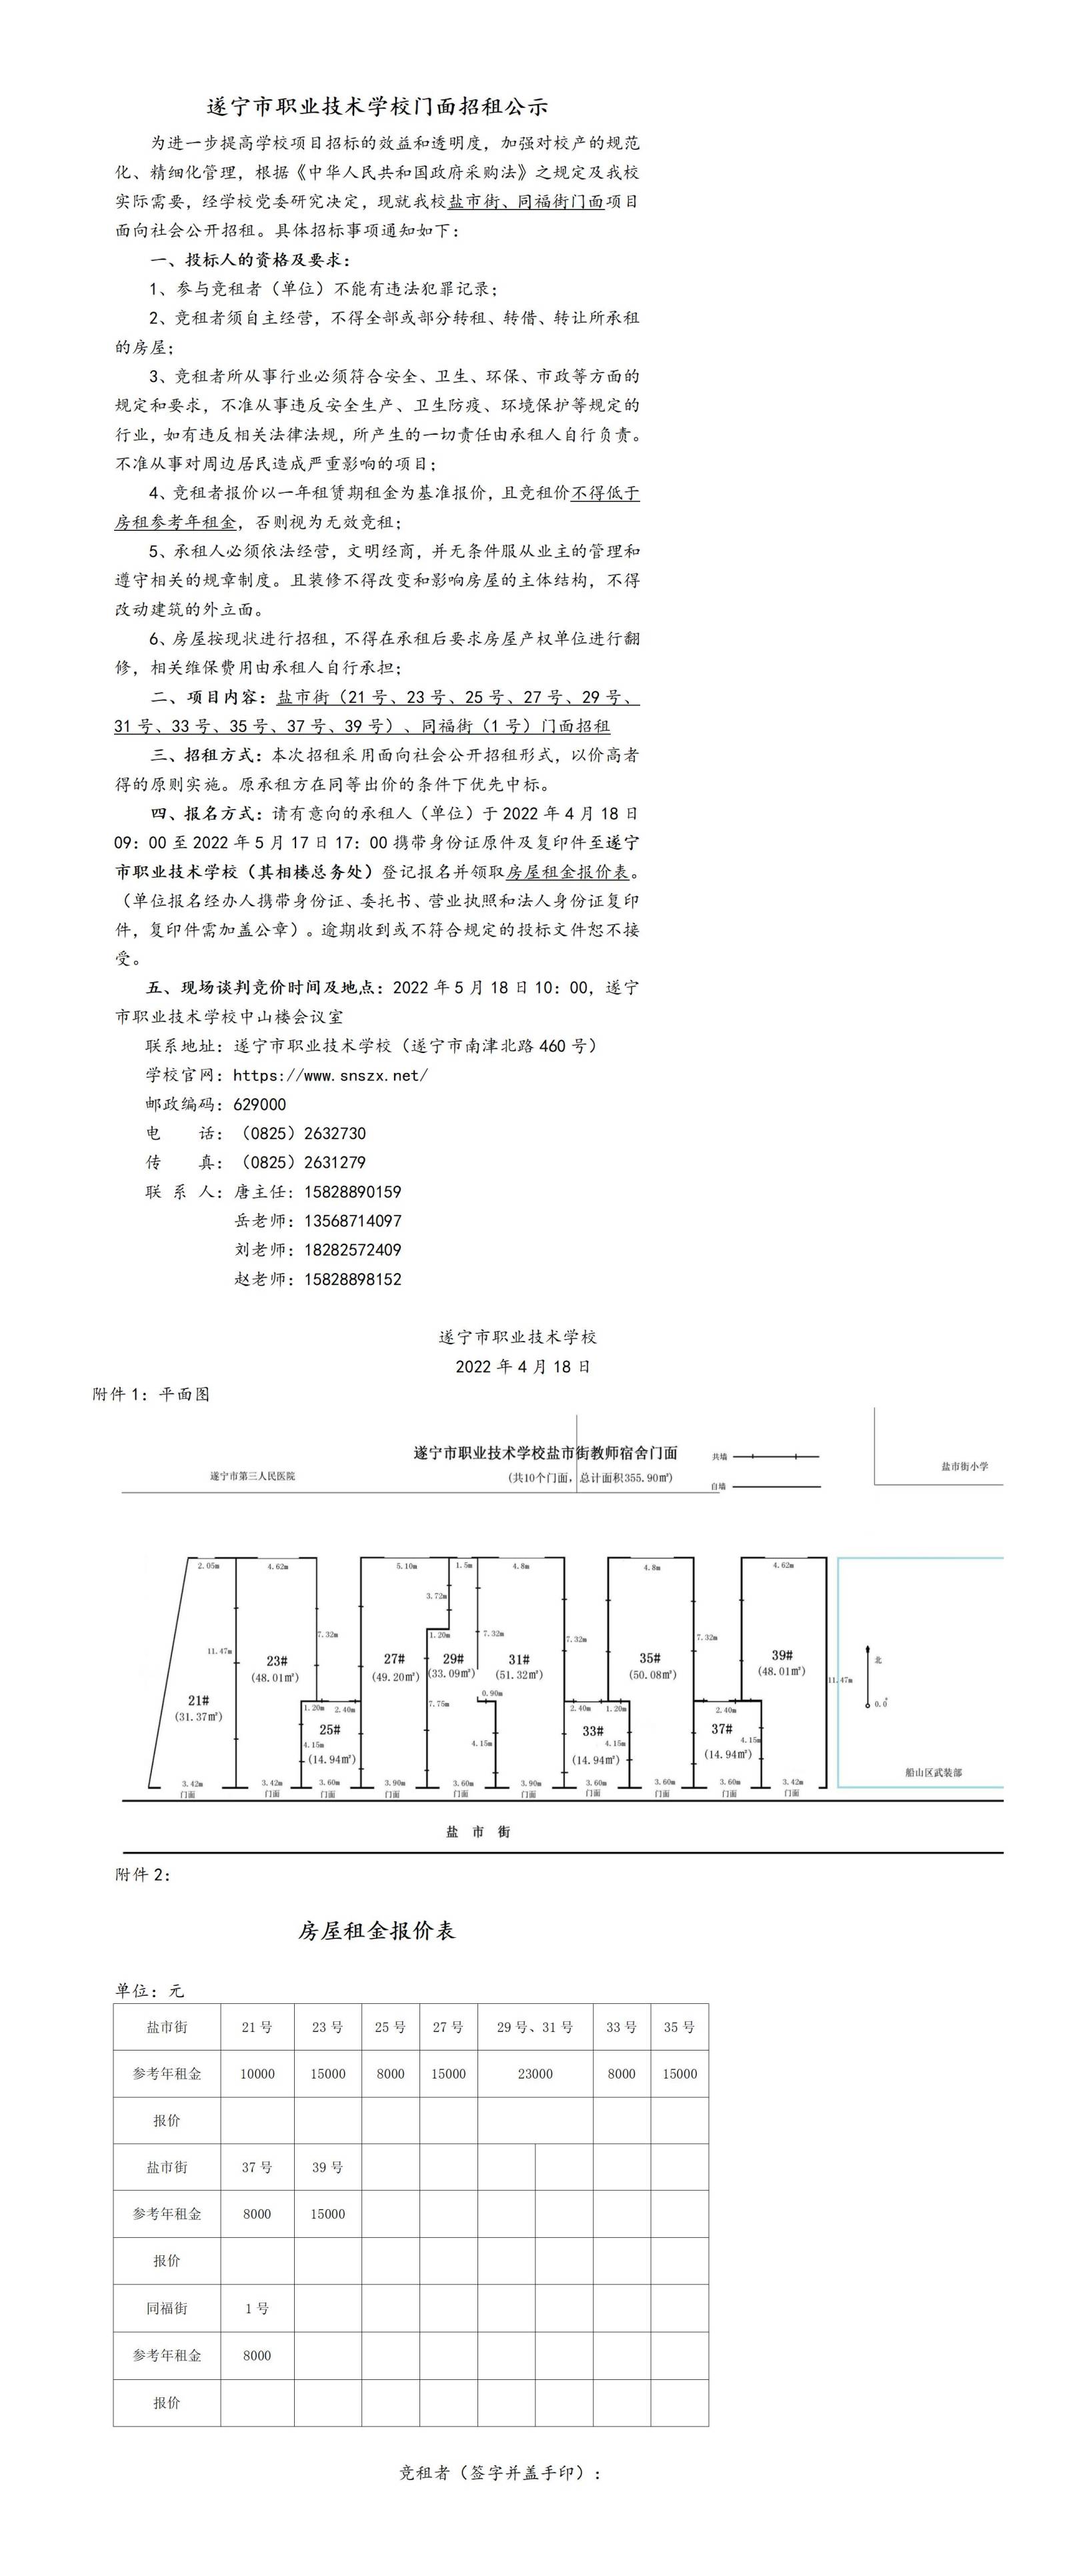 遂宁市职业技术学校门面招租邀请书（定稿）_01(1).jpg